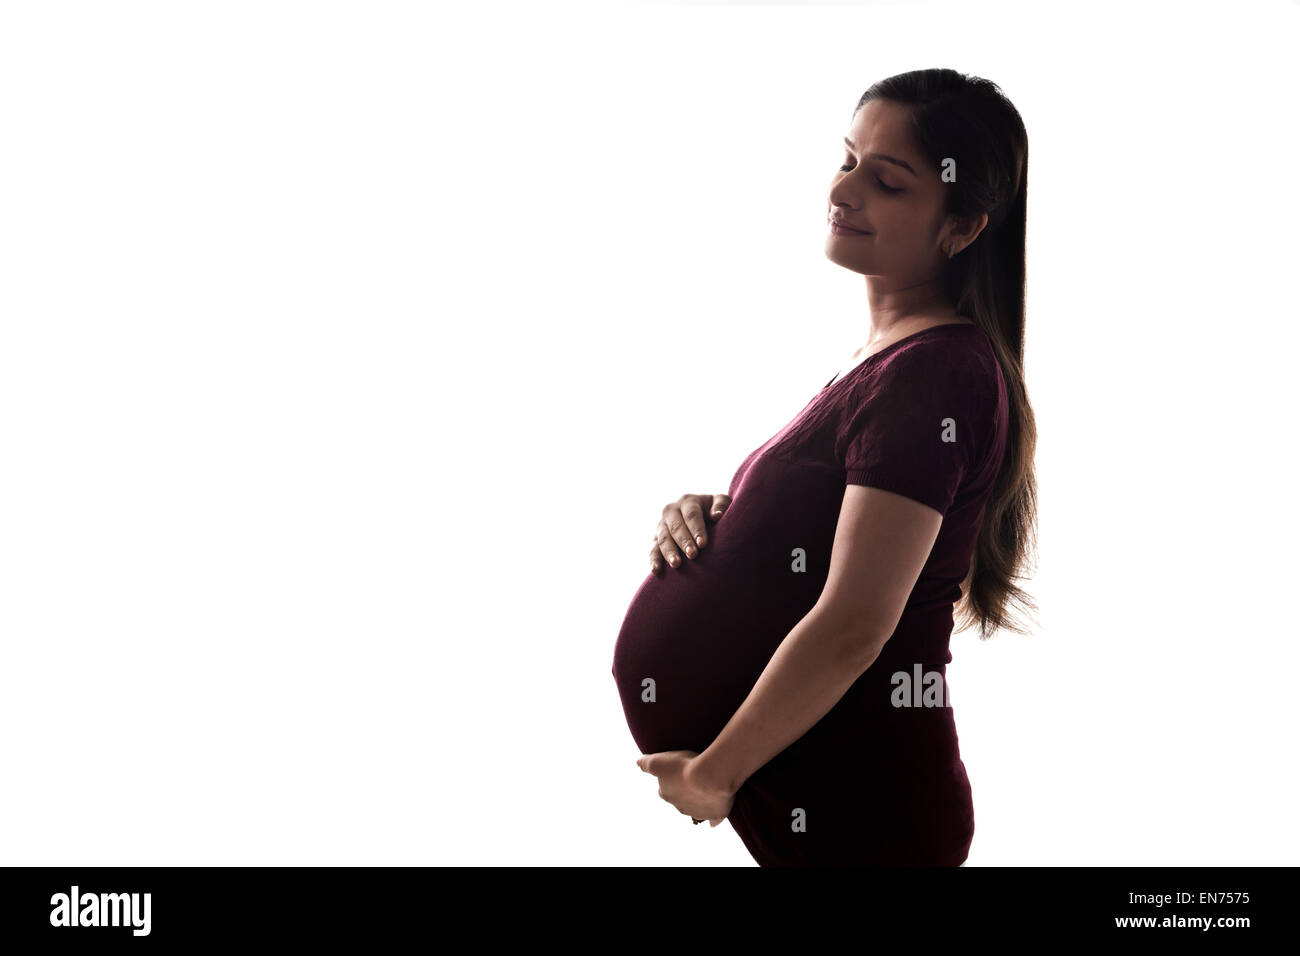 Schwangere Frau mit Bauch Stockfoto